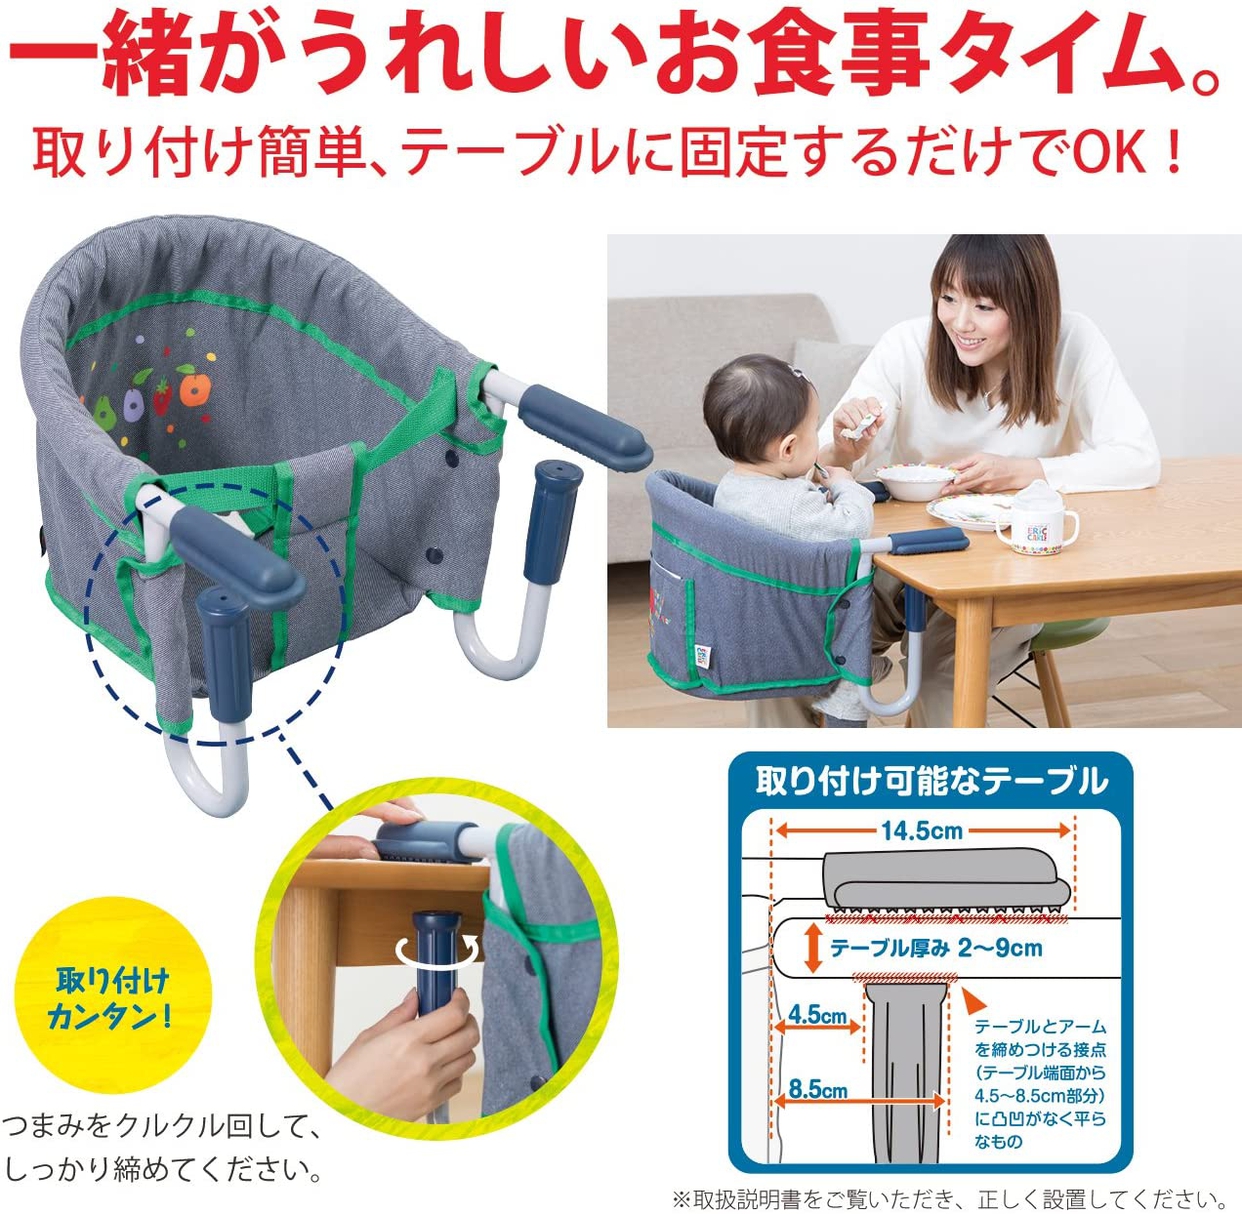 日本育児(nihon ikuji) はらぺこあおむし テーブルチェアの商品画像2 